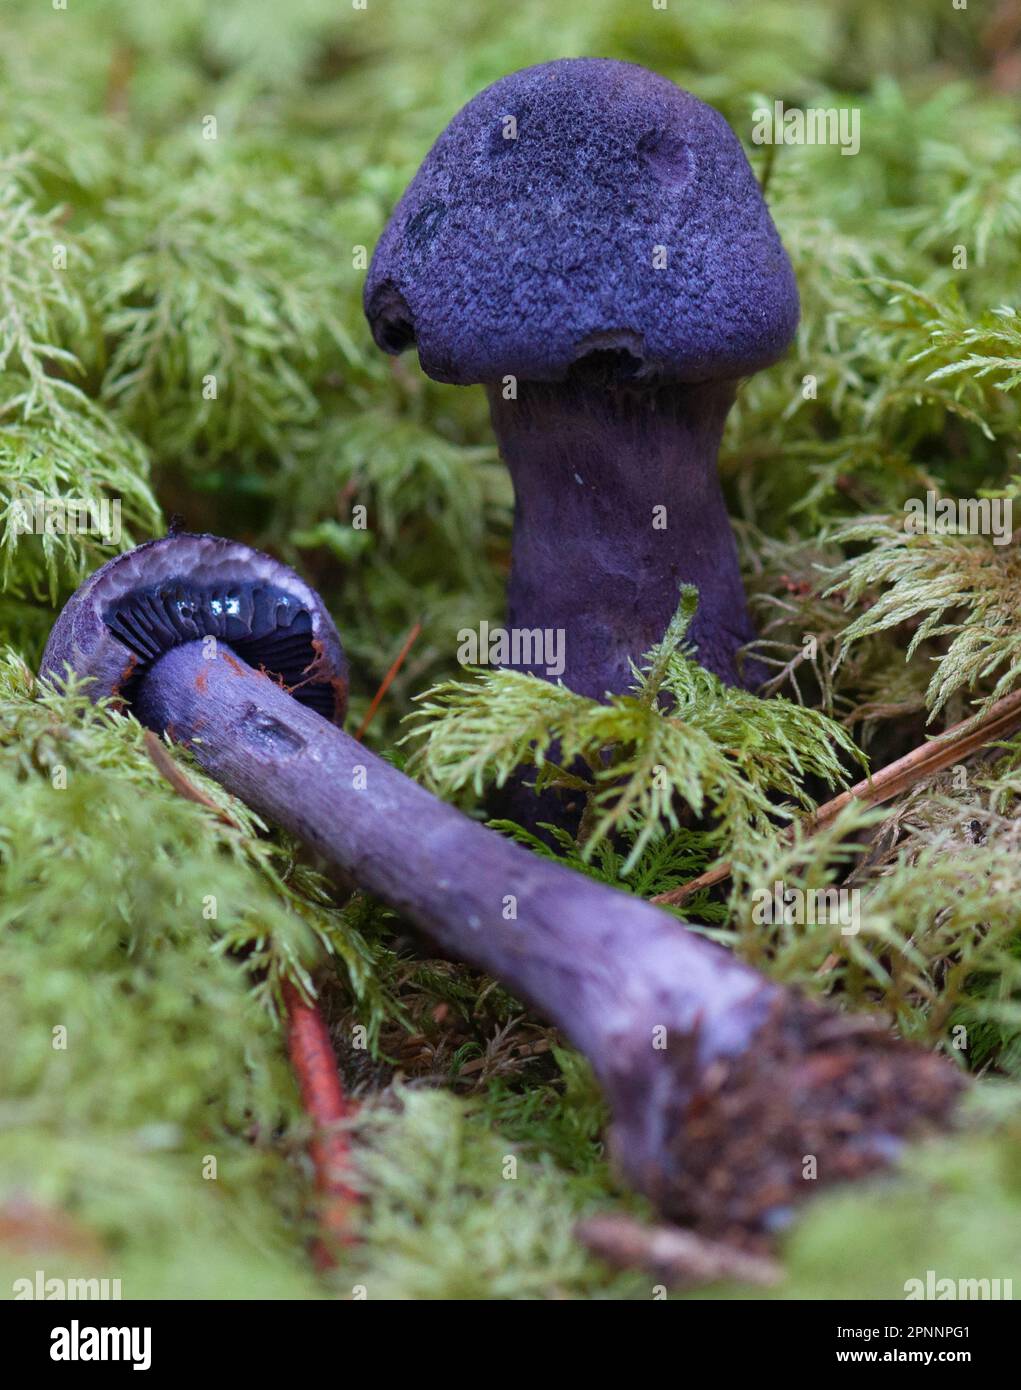 Violet webcap (Cortinarius violaceus) Stock Photo